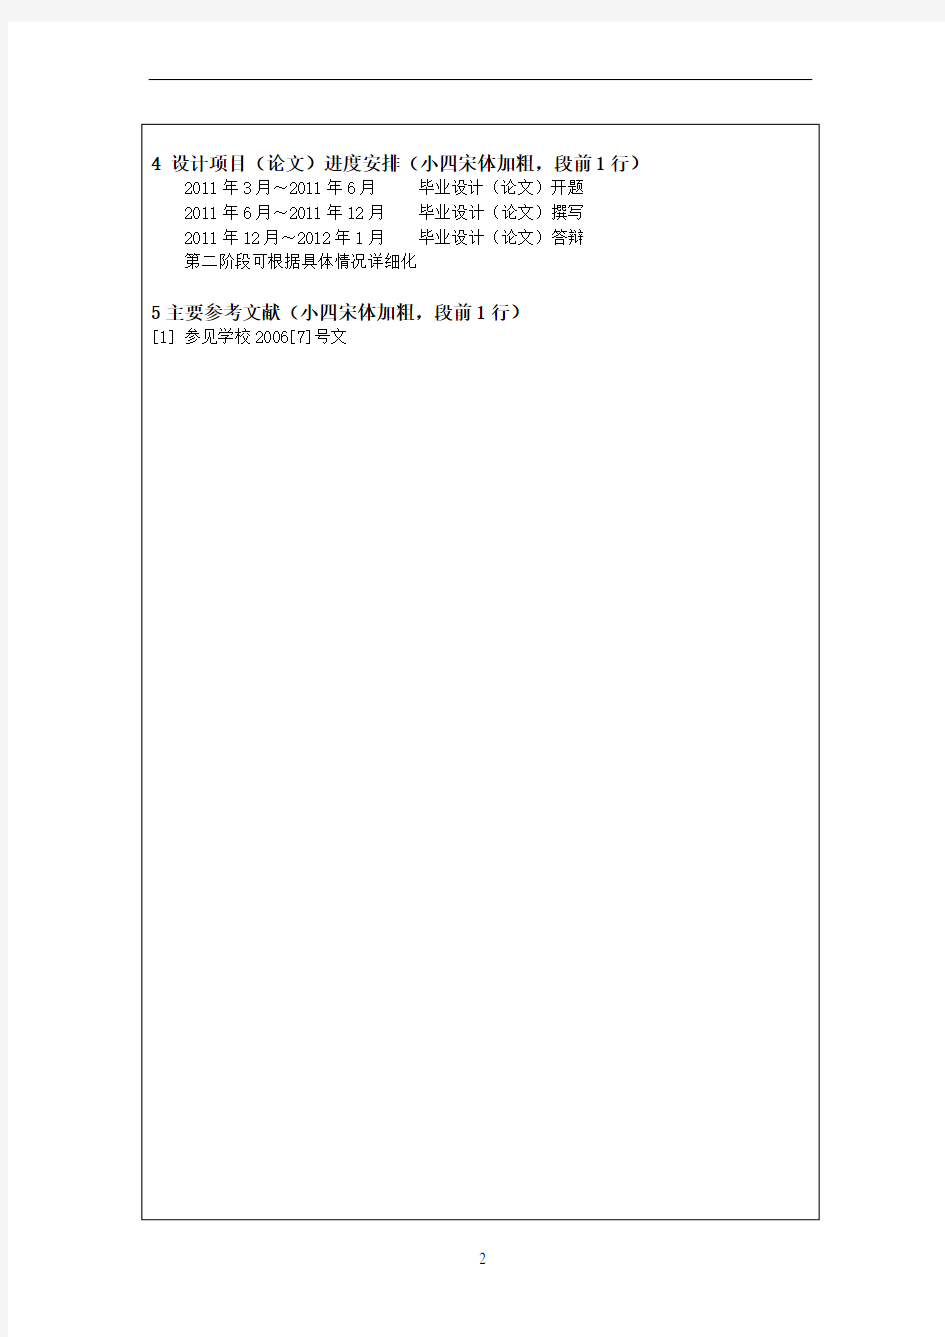 四川农业大学本科生毕业论文(设计)开题报告格式